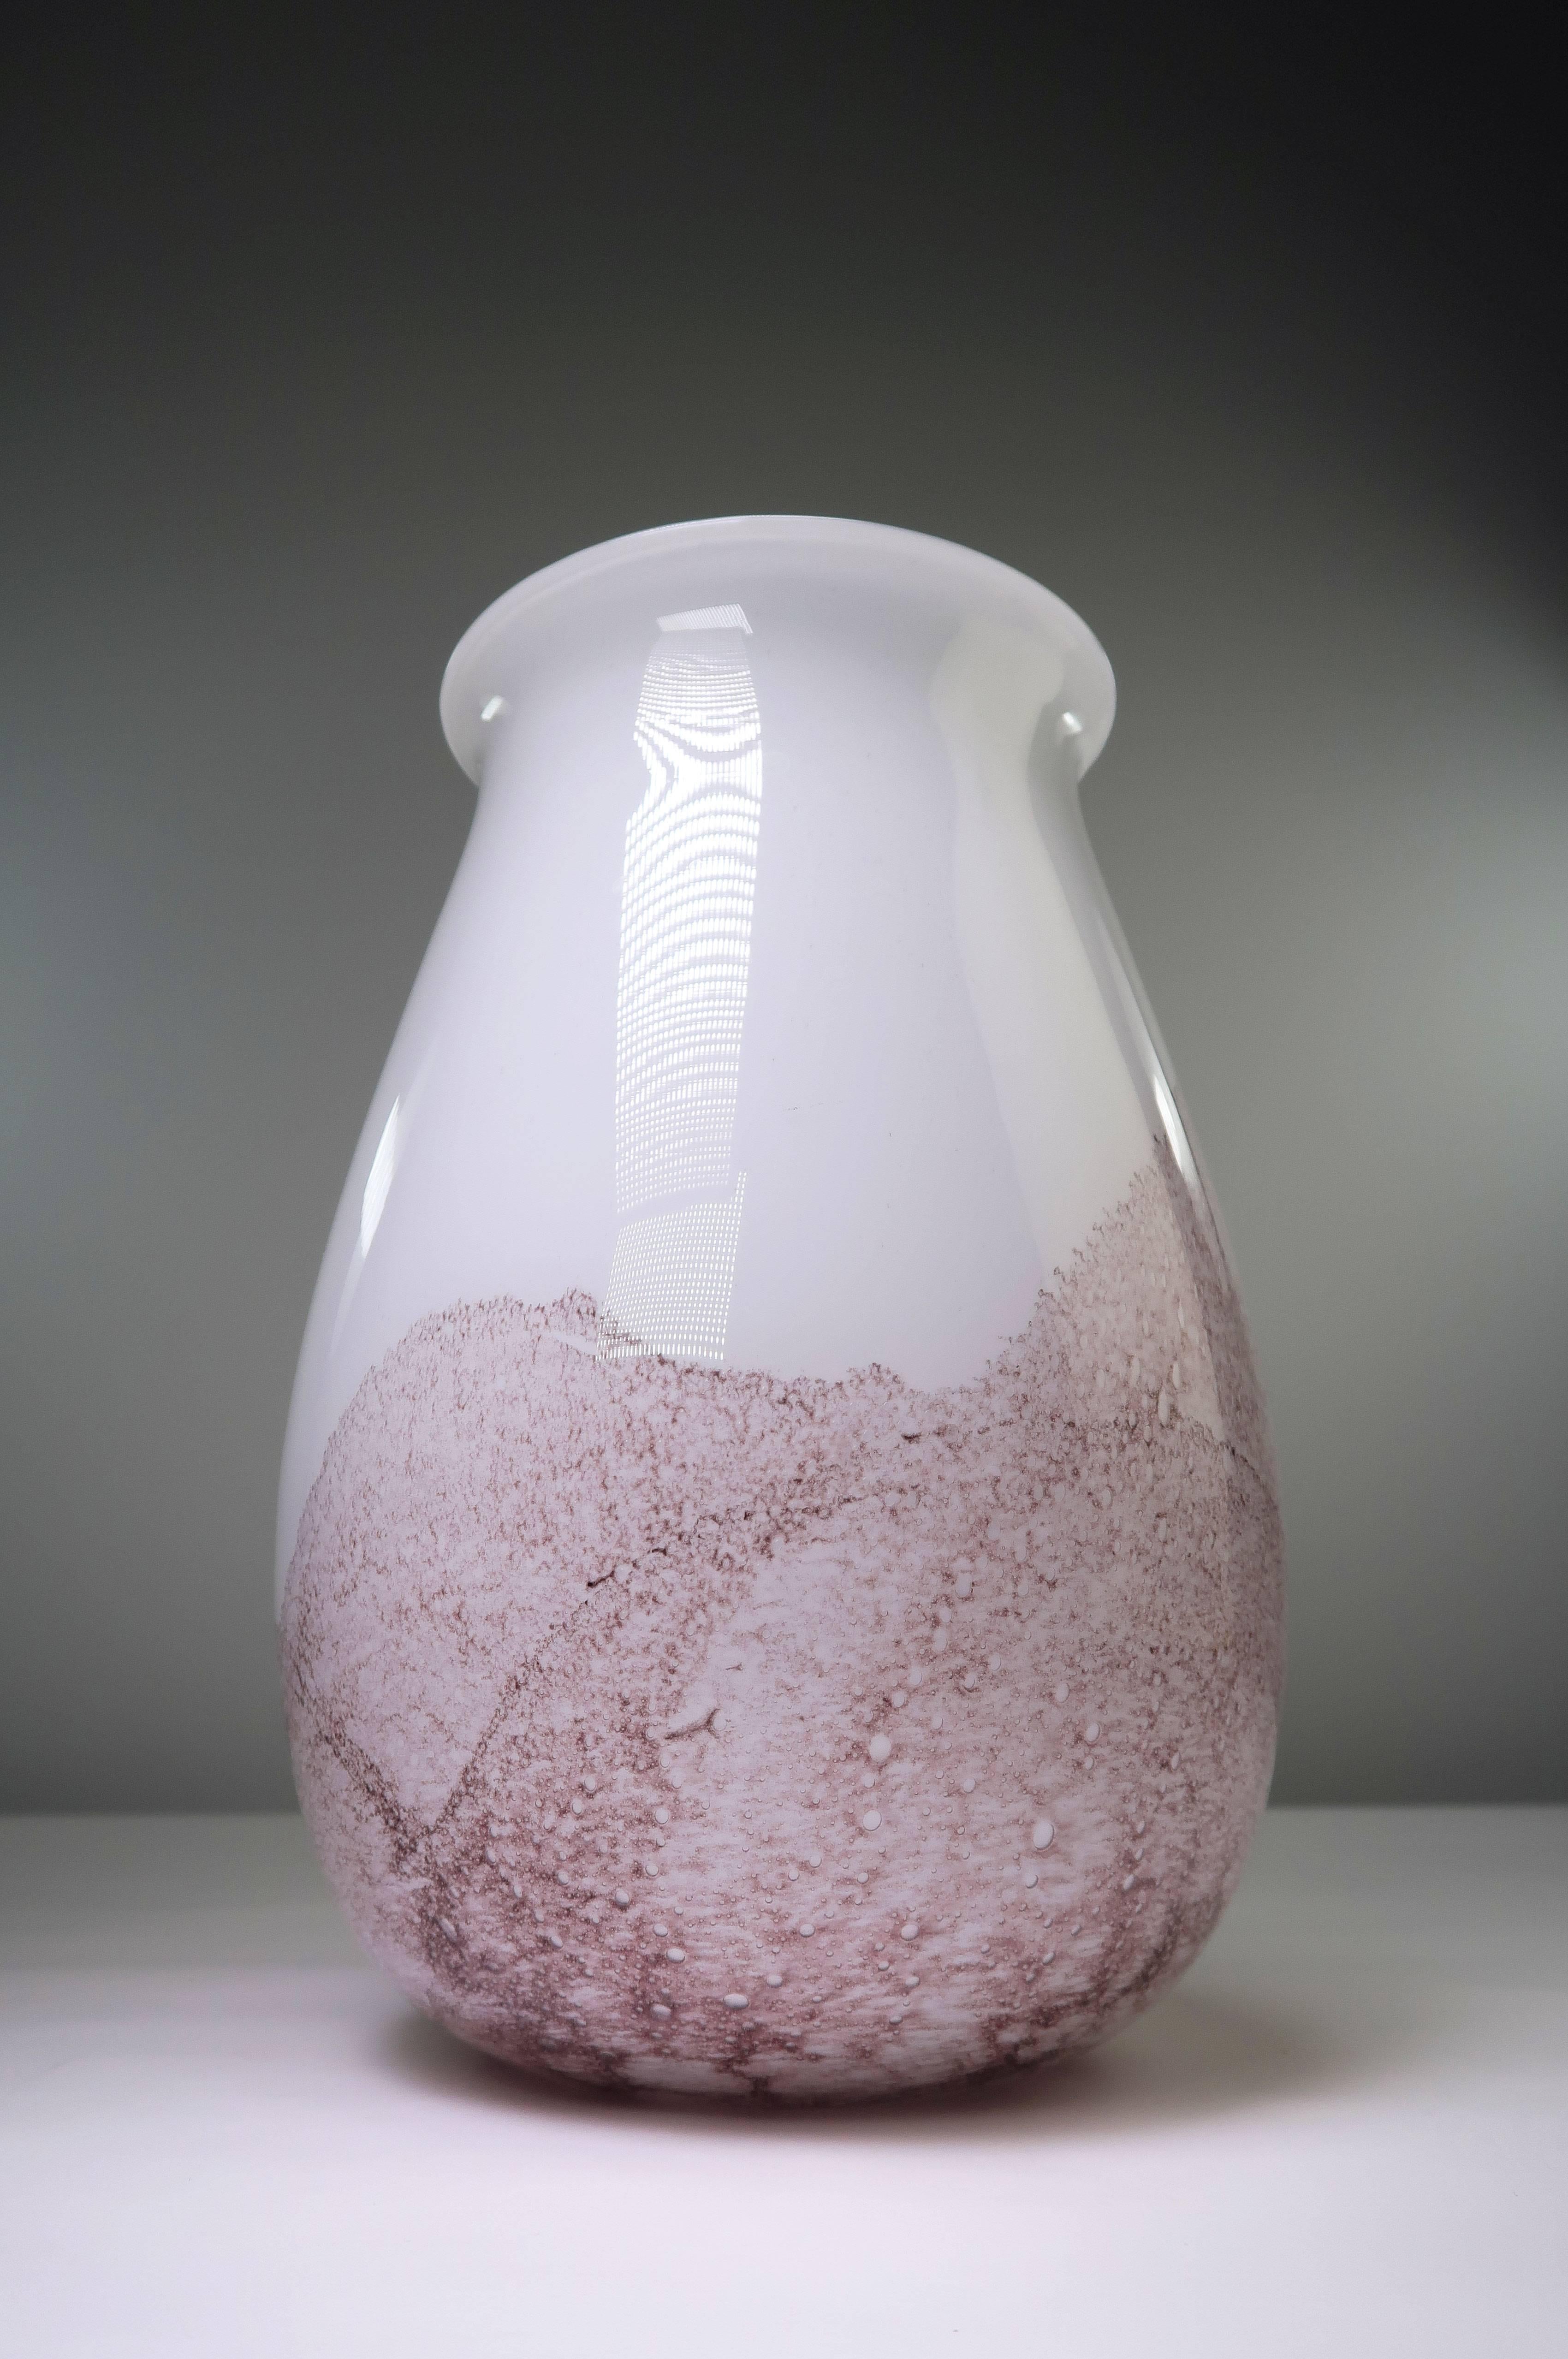 Vase d'art moderne danois en verre soufflé à la bouche avec un motif de paysage bouillonnant de couleur mûre sur un verre blanc opalin. Fabriqué par la verrerie danoise Holmegaard dans les années 1960. Excellent état, semblant avoir été